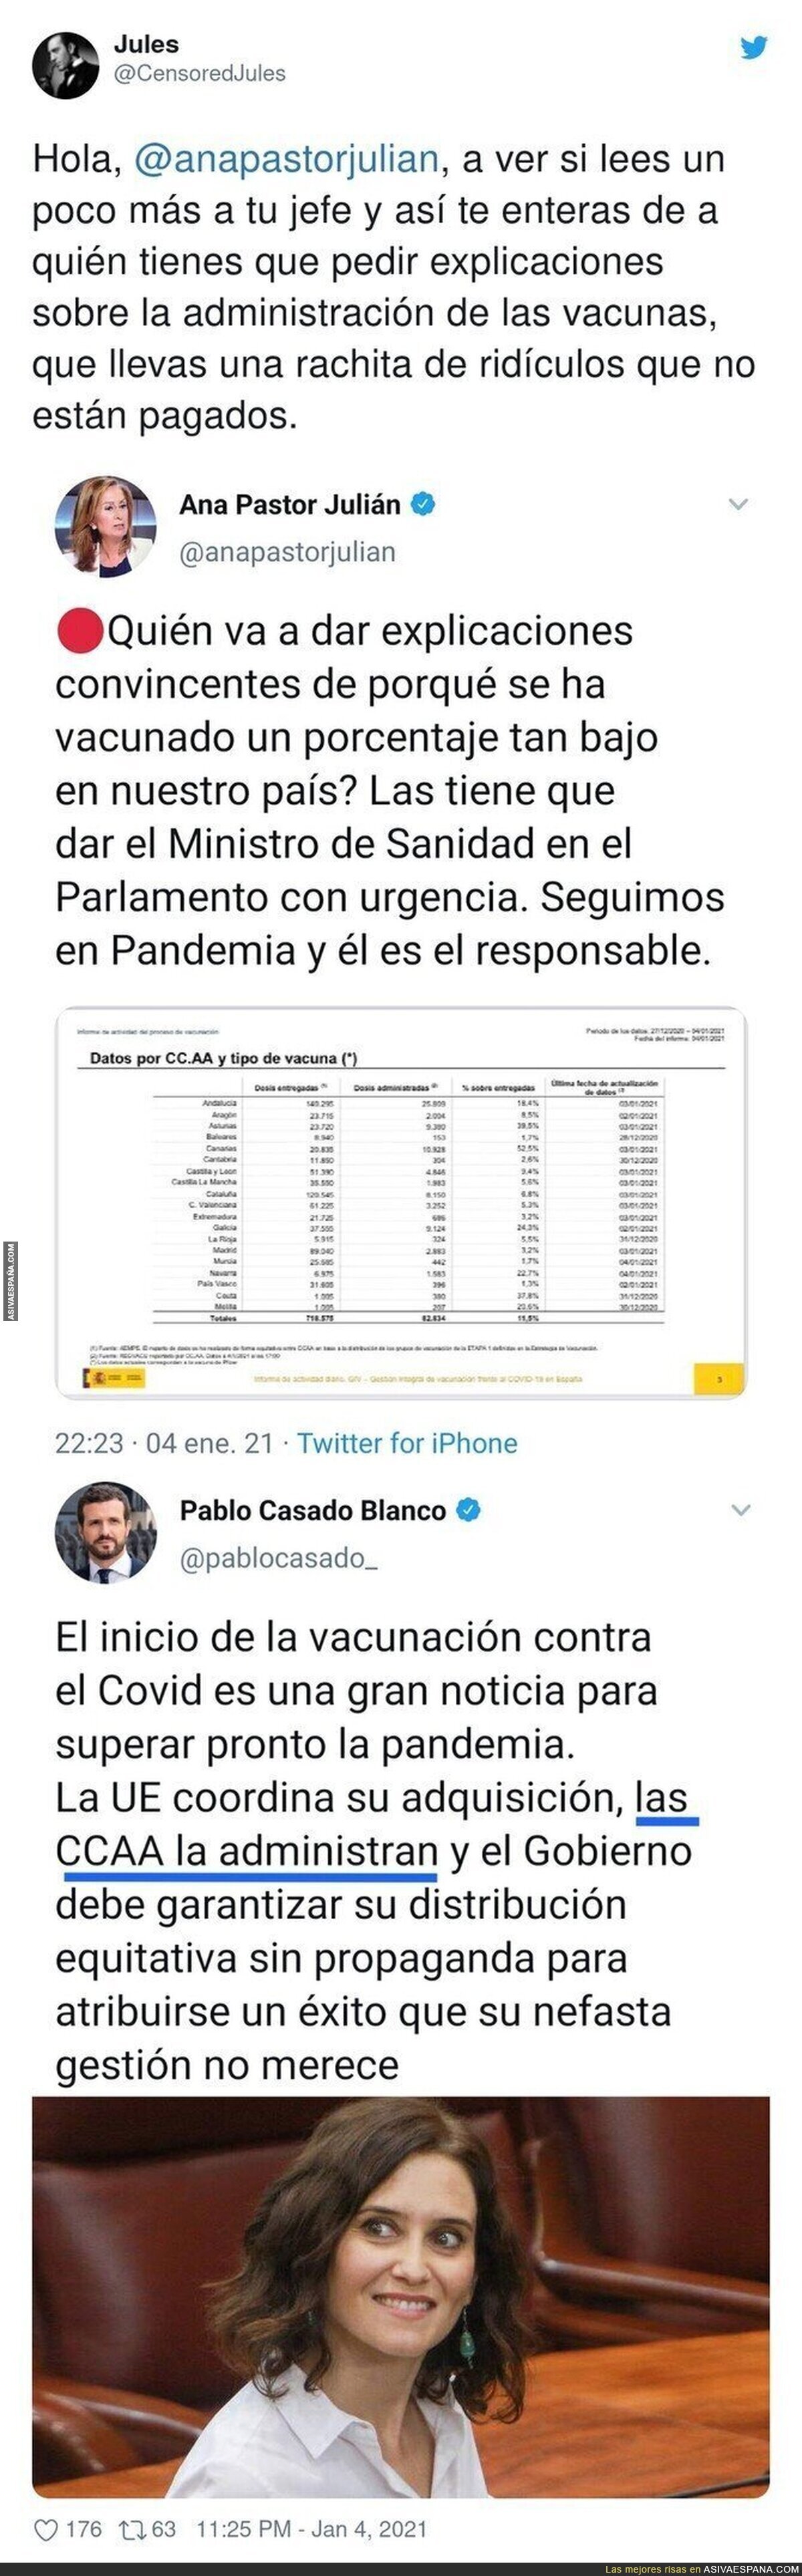 Ana Pastor y todo el PP queda retratado al completo con el tema de las vacunas por lo que dijo Pablo Casado hace poco tiempo